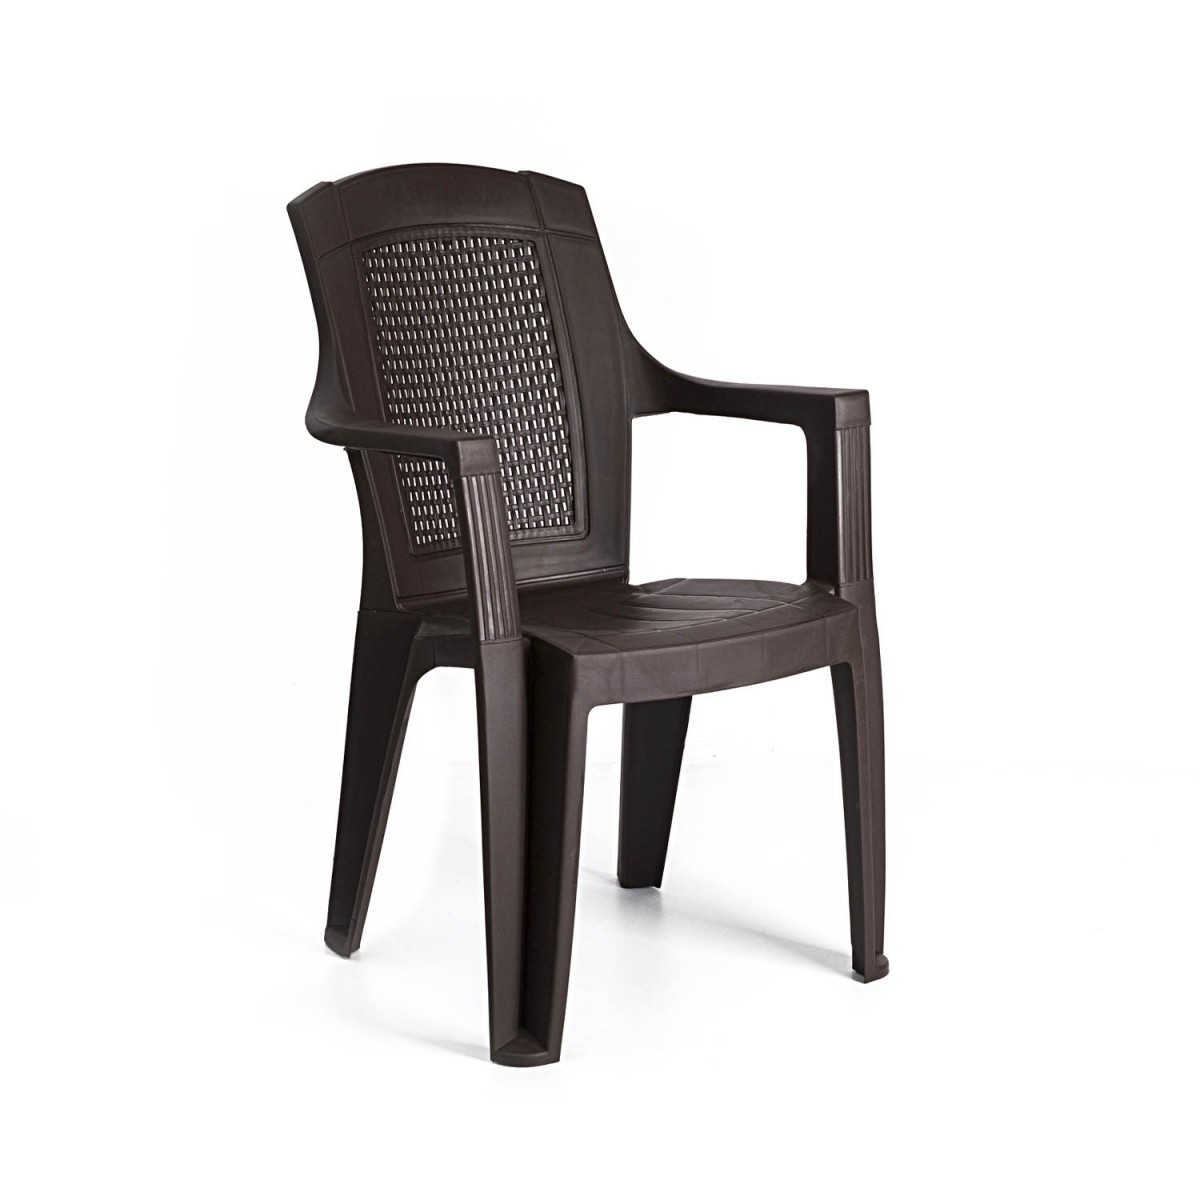 Bahex Padişah Kollu Koltuk - Sandalye Armchair - OUTDOOR & INDOOR Padişah Chair